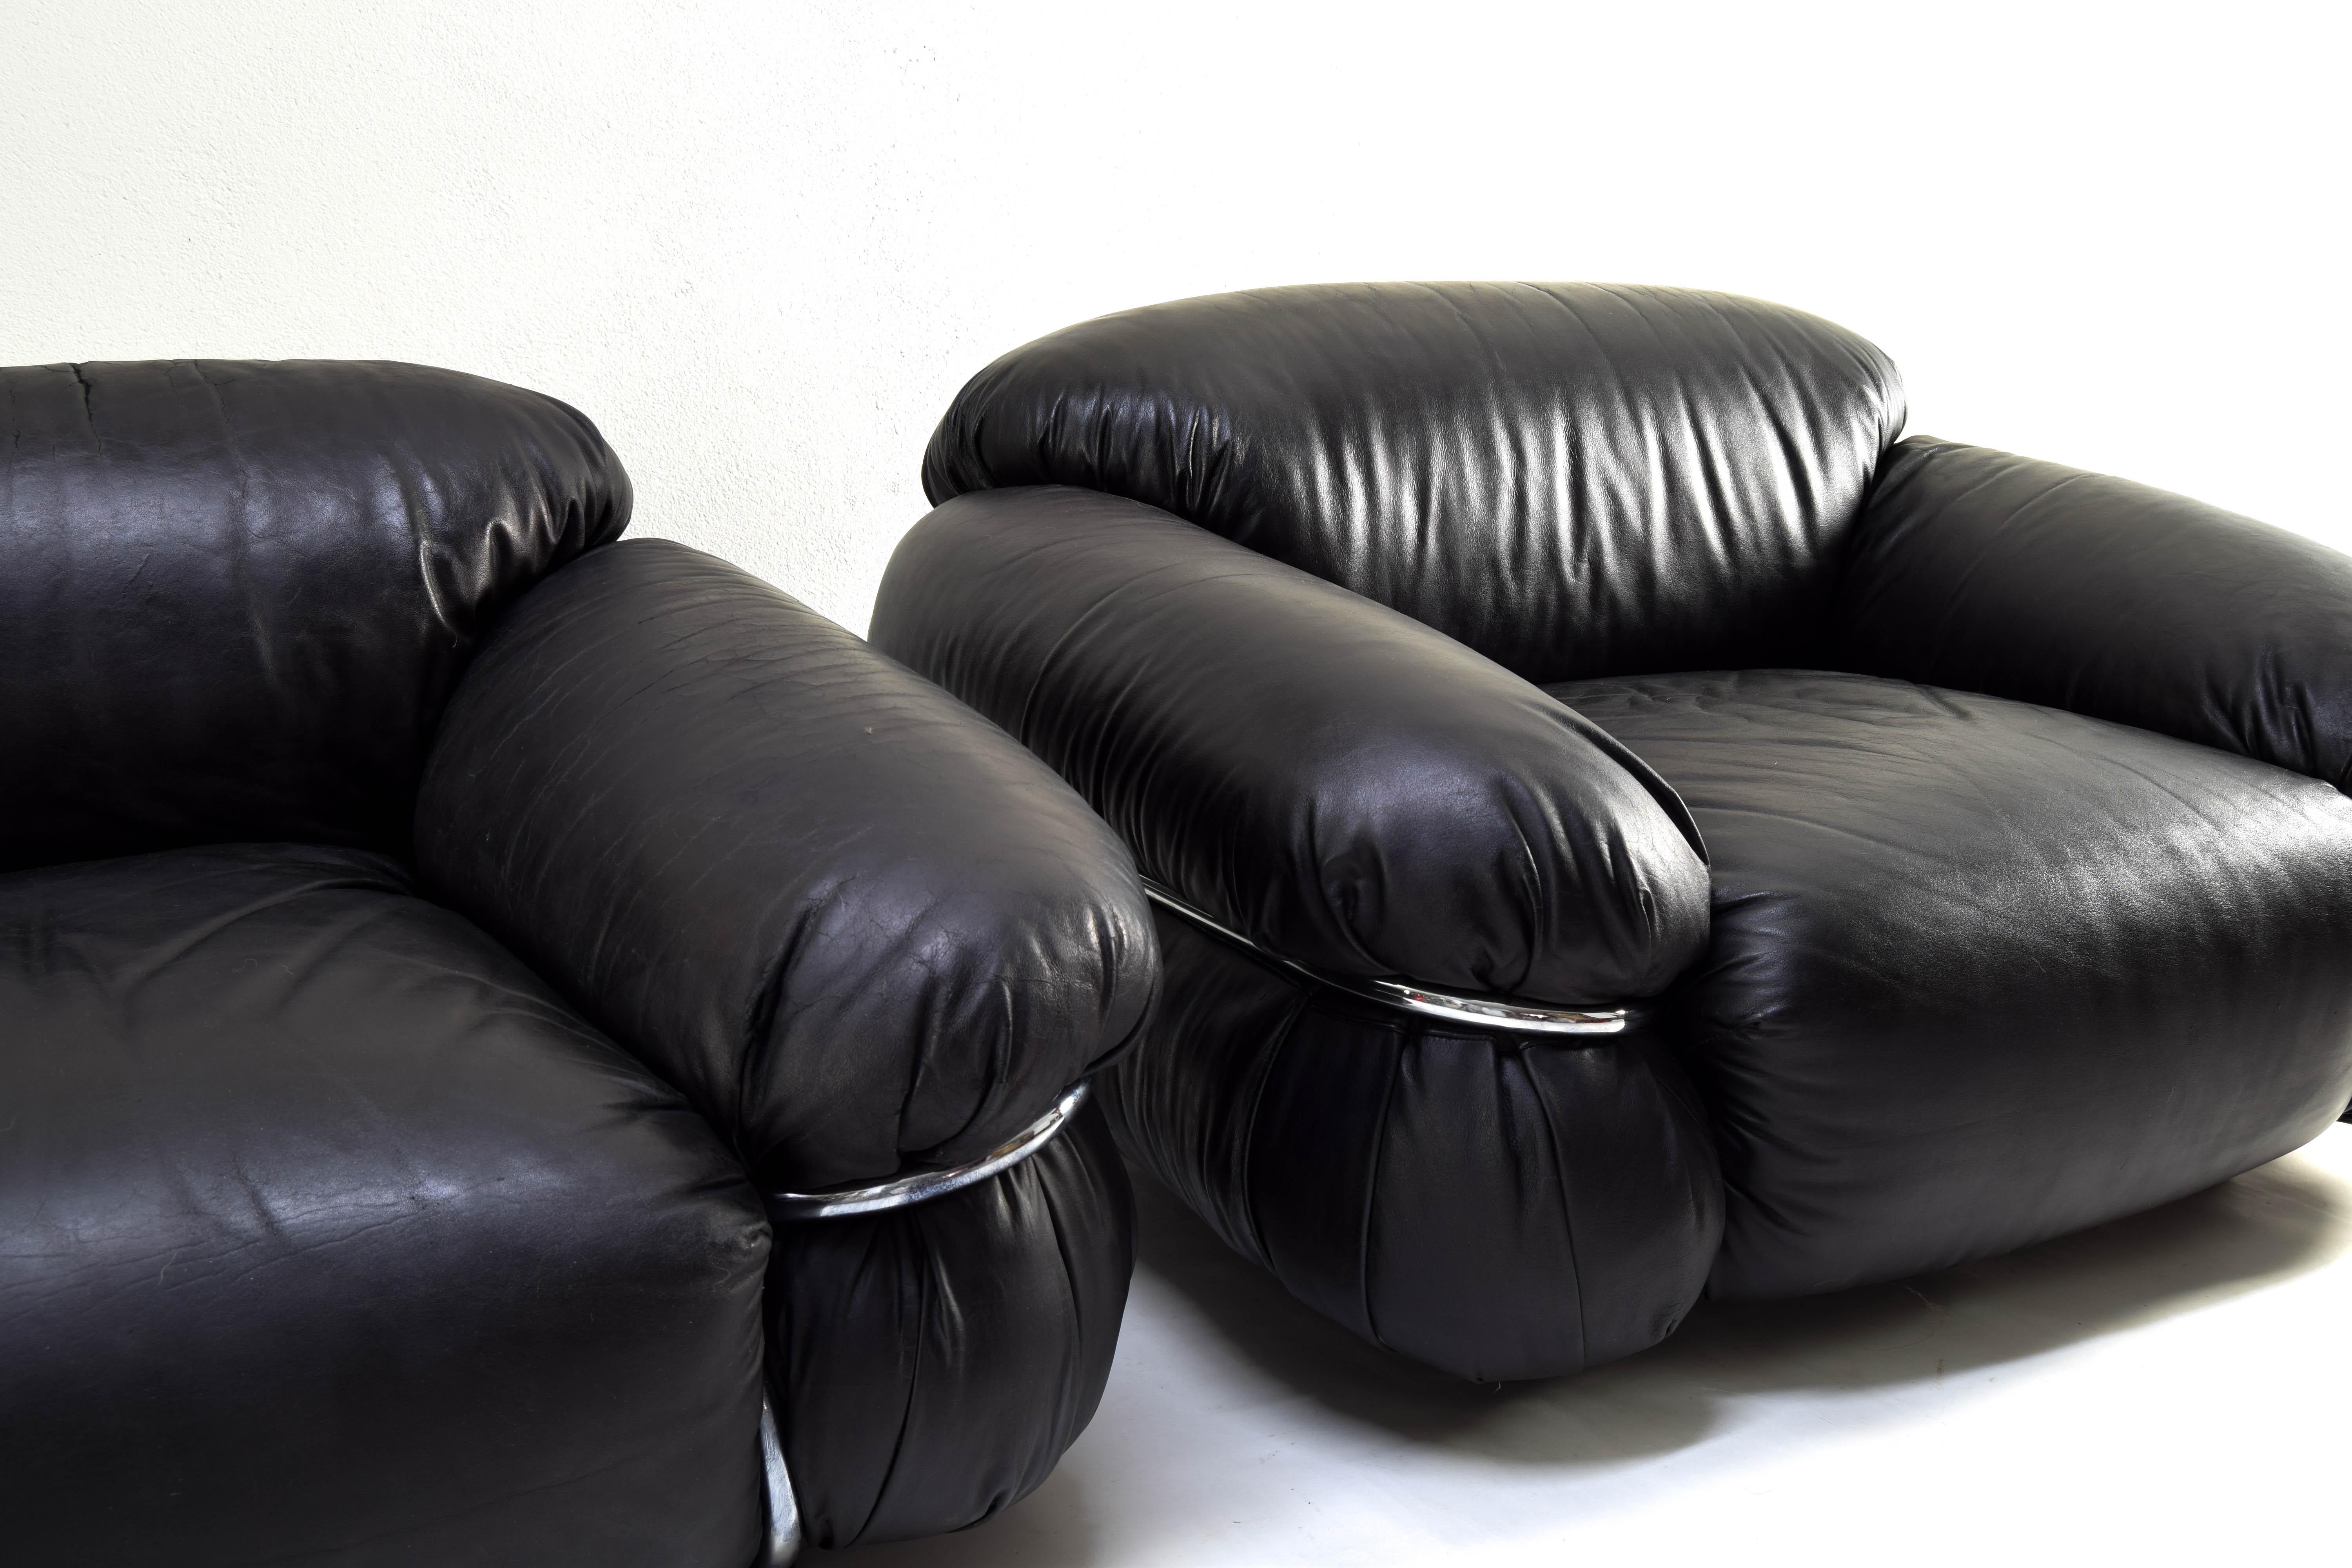 Zwei Sessel des italienischen Modells Sesann, entworfen von Gianfranco Frattini für Casina in den 70er Jahren.
Körper gepolstert in schwarzem Leder und Chromstruktur.
Wie auf dem Bild der Armlehne zu sehen ist, weist das Leder in diesem Bereich